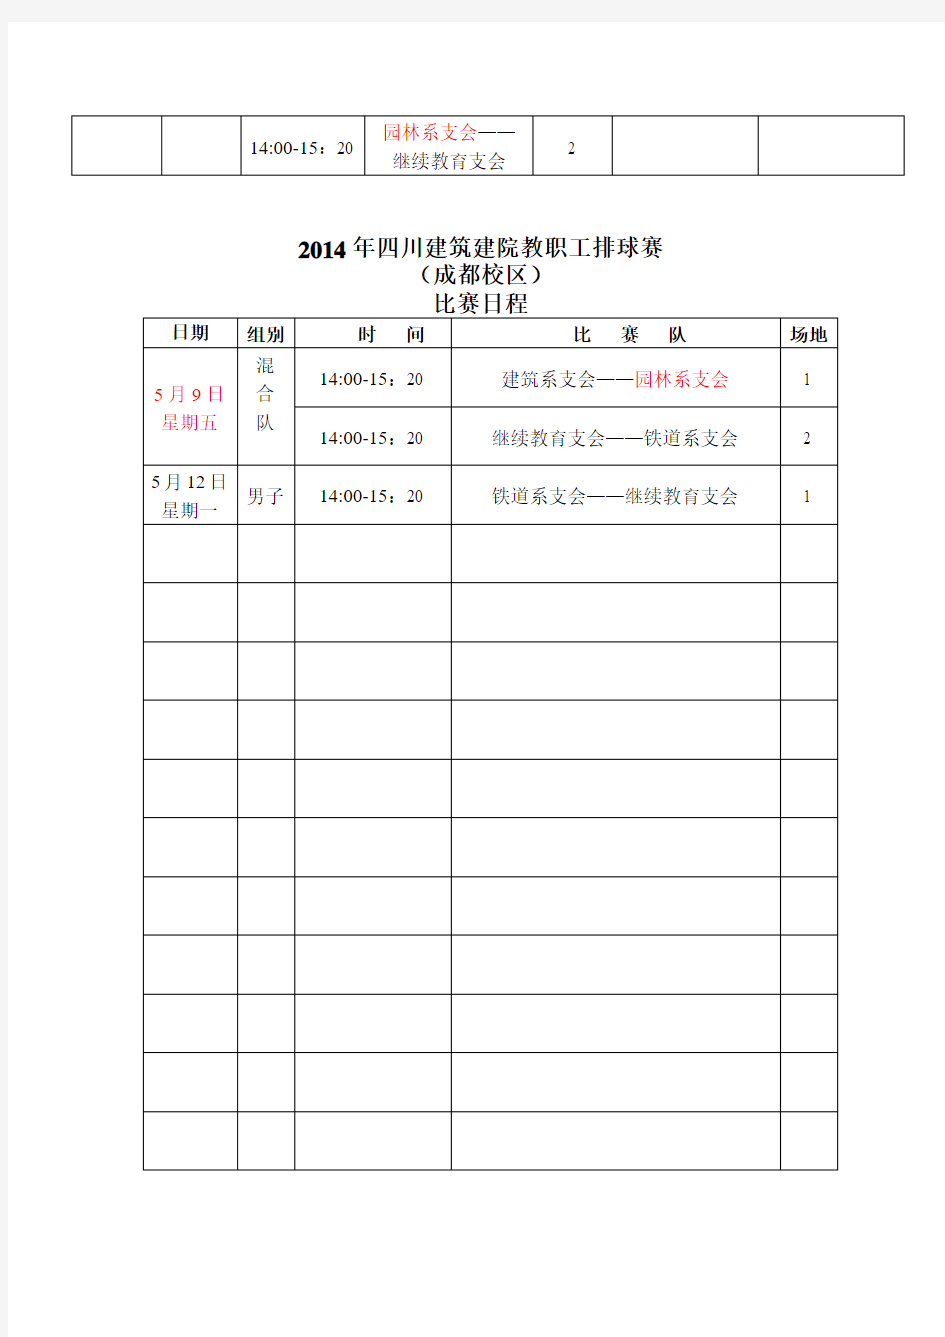 2014教职工排球比赛日程(成都)